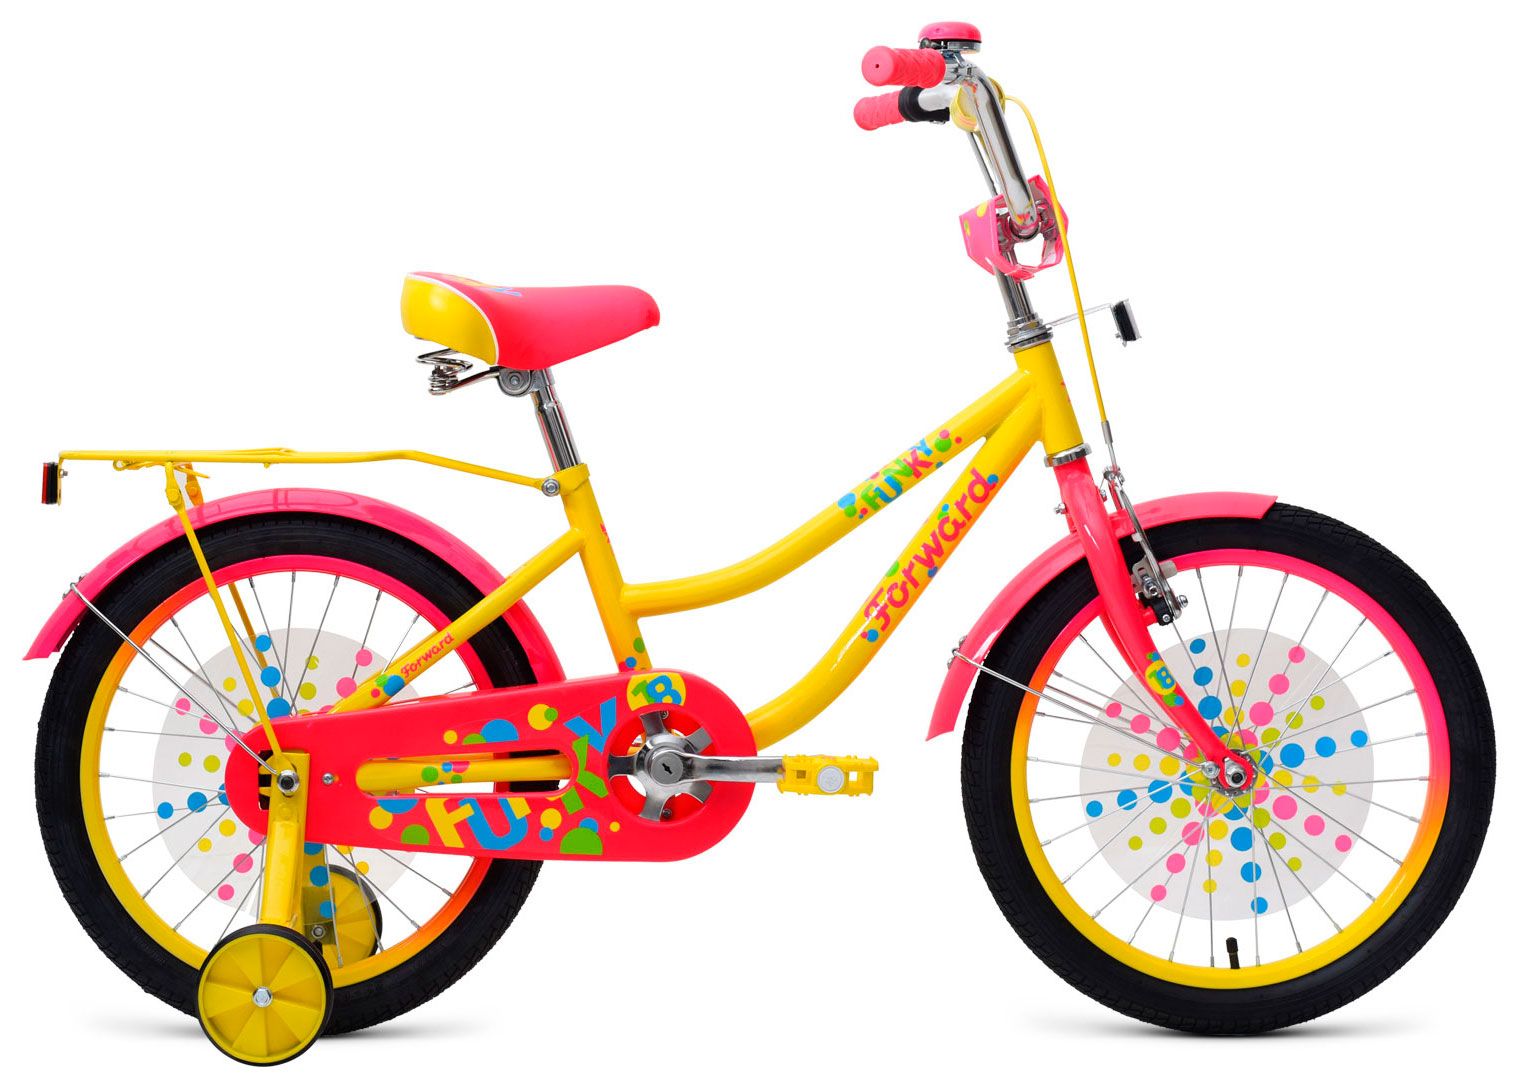  Отзывы о Трехколесный детский велосипед Forward Funky 18 2018